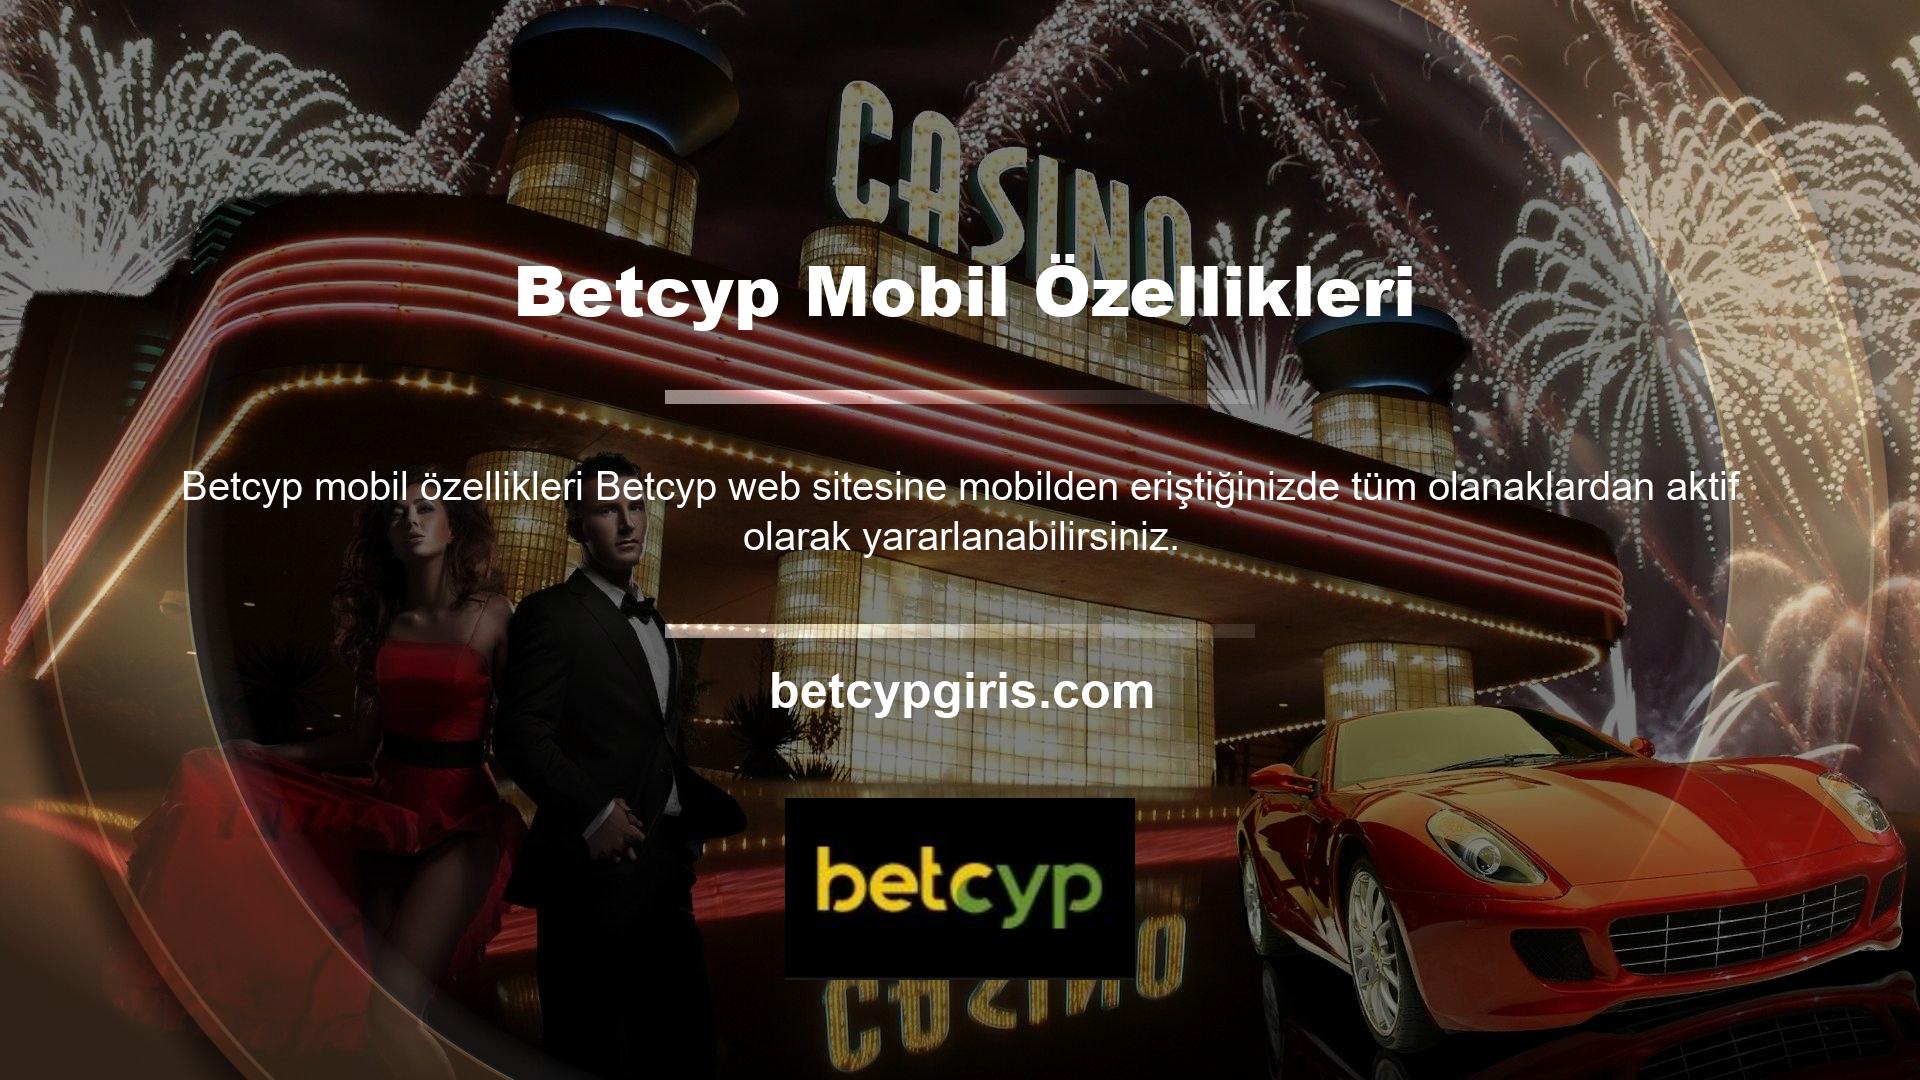 Betcyp mobil versiyondan giriş yaptığınızda Spor Bahisleri Bölümü, Canlı Bahis Bölümü, Sanal Bahis Bölümü, Casino Oyunları ve Canlı Casino Oyunları, Casino Seçenekleri, Çarkıfelek, Poker Oyunları ve Bingo bölümlerini göreceksiniz